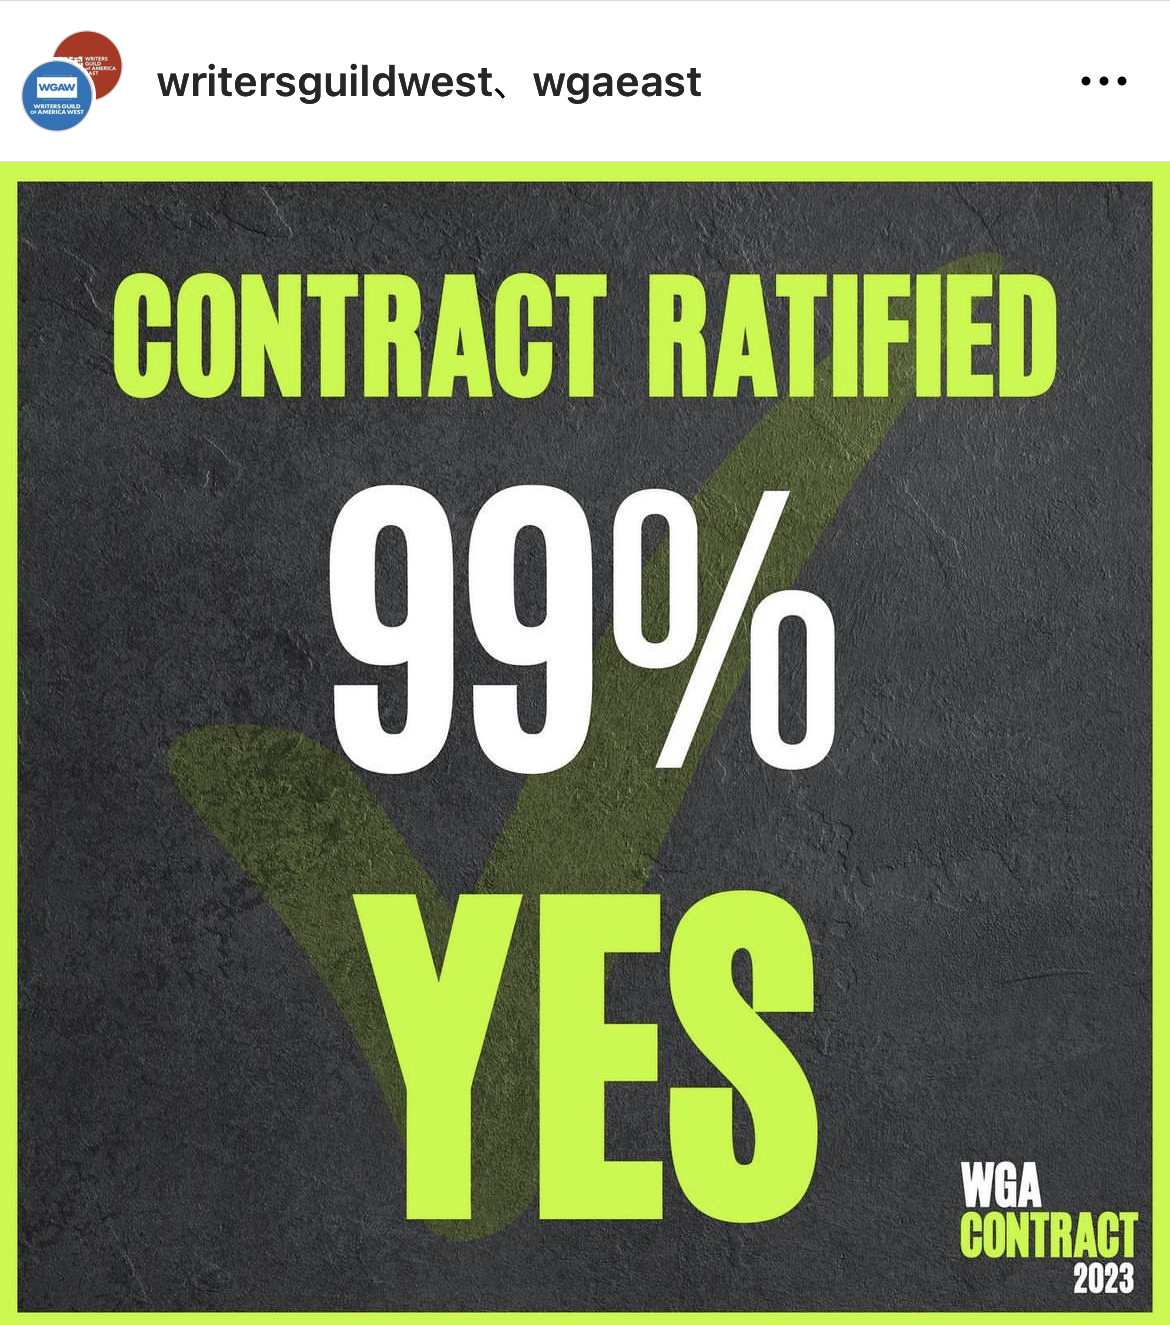 脚本家組合メンバーの99%が同意した新契約が生まれた（@wgaeast / Instagram）